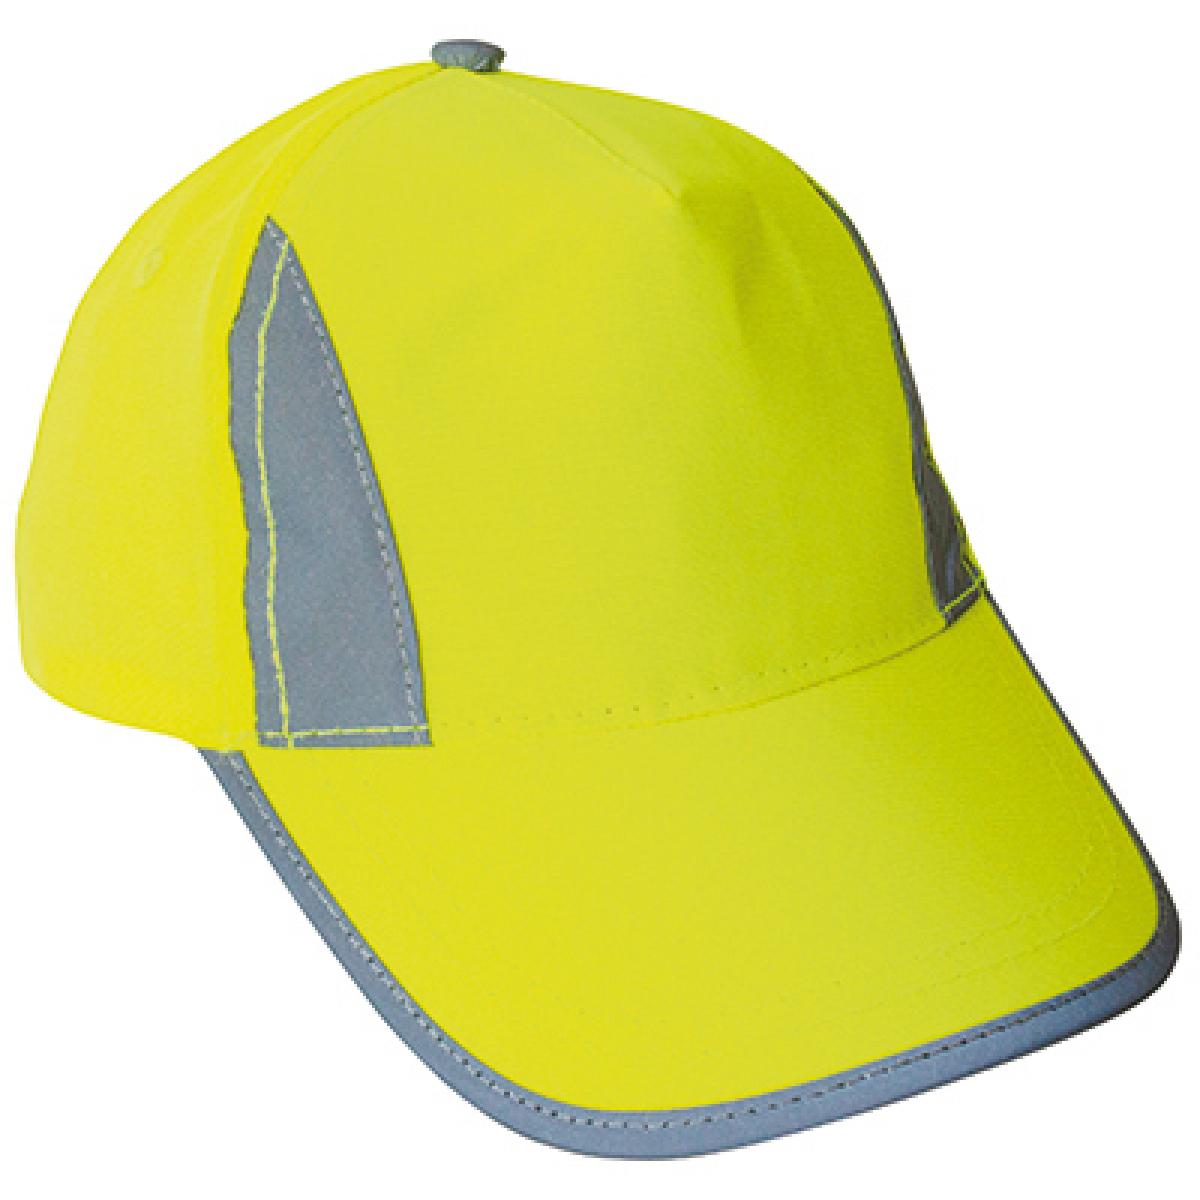 Hersteller: Korntex Herstellernummer: KXPCAP Artikelbezeichnung: Hi-Viz-, Fluo-, Reflective-Cap Farbe: Signal Yellow